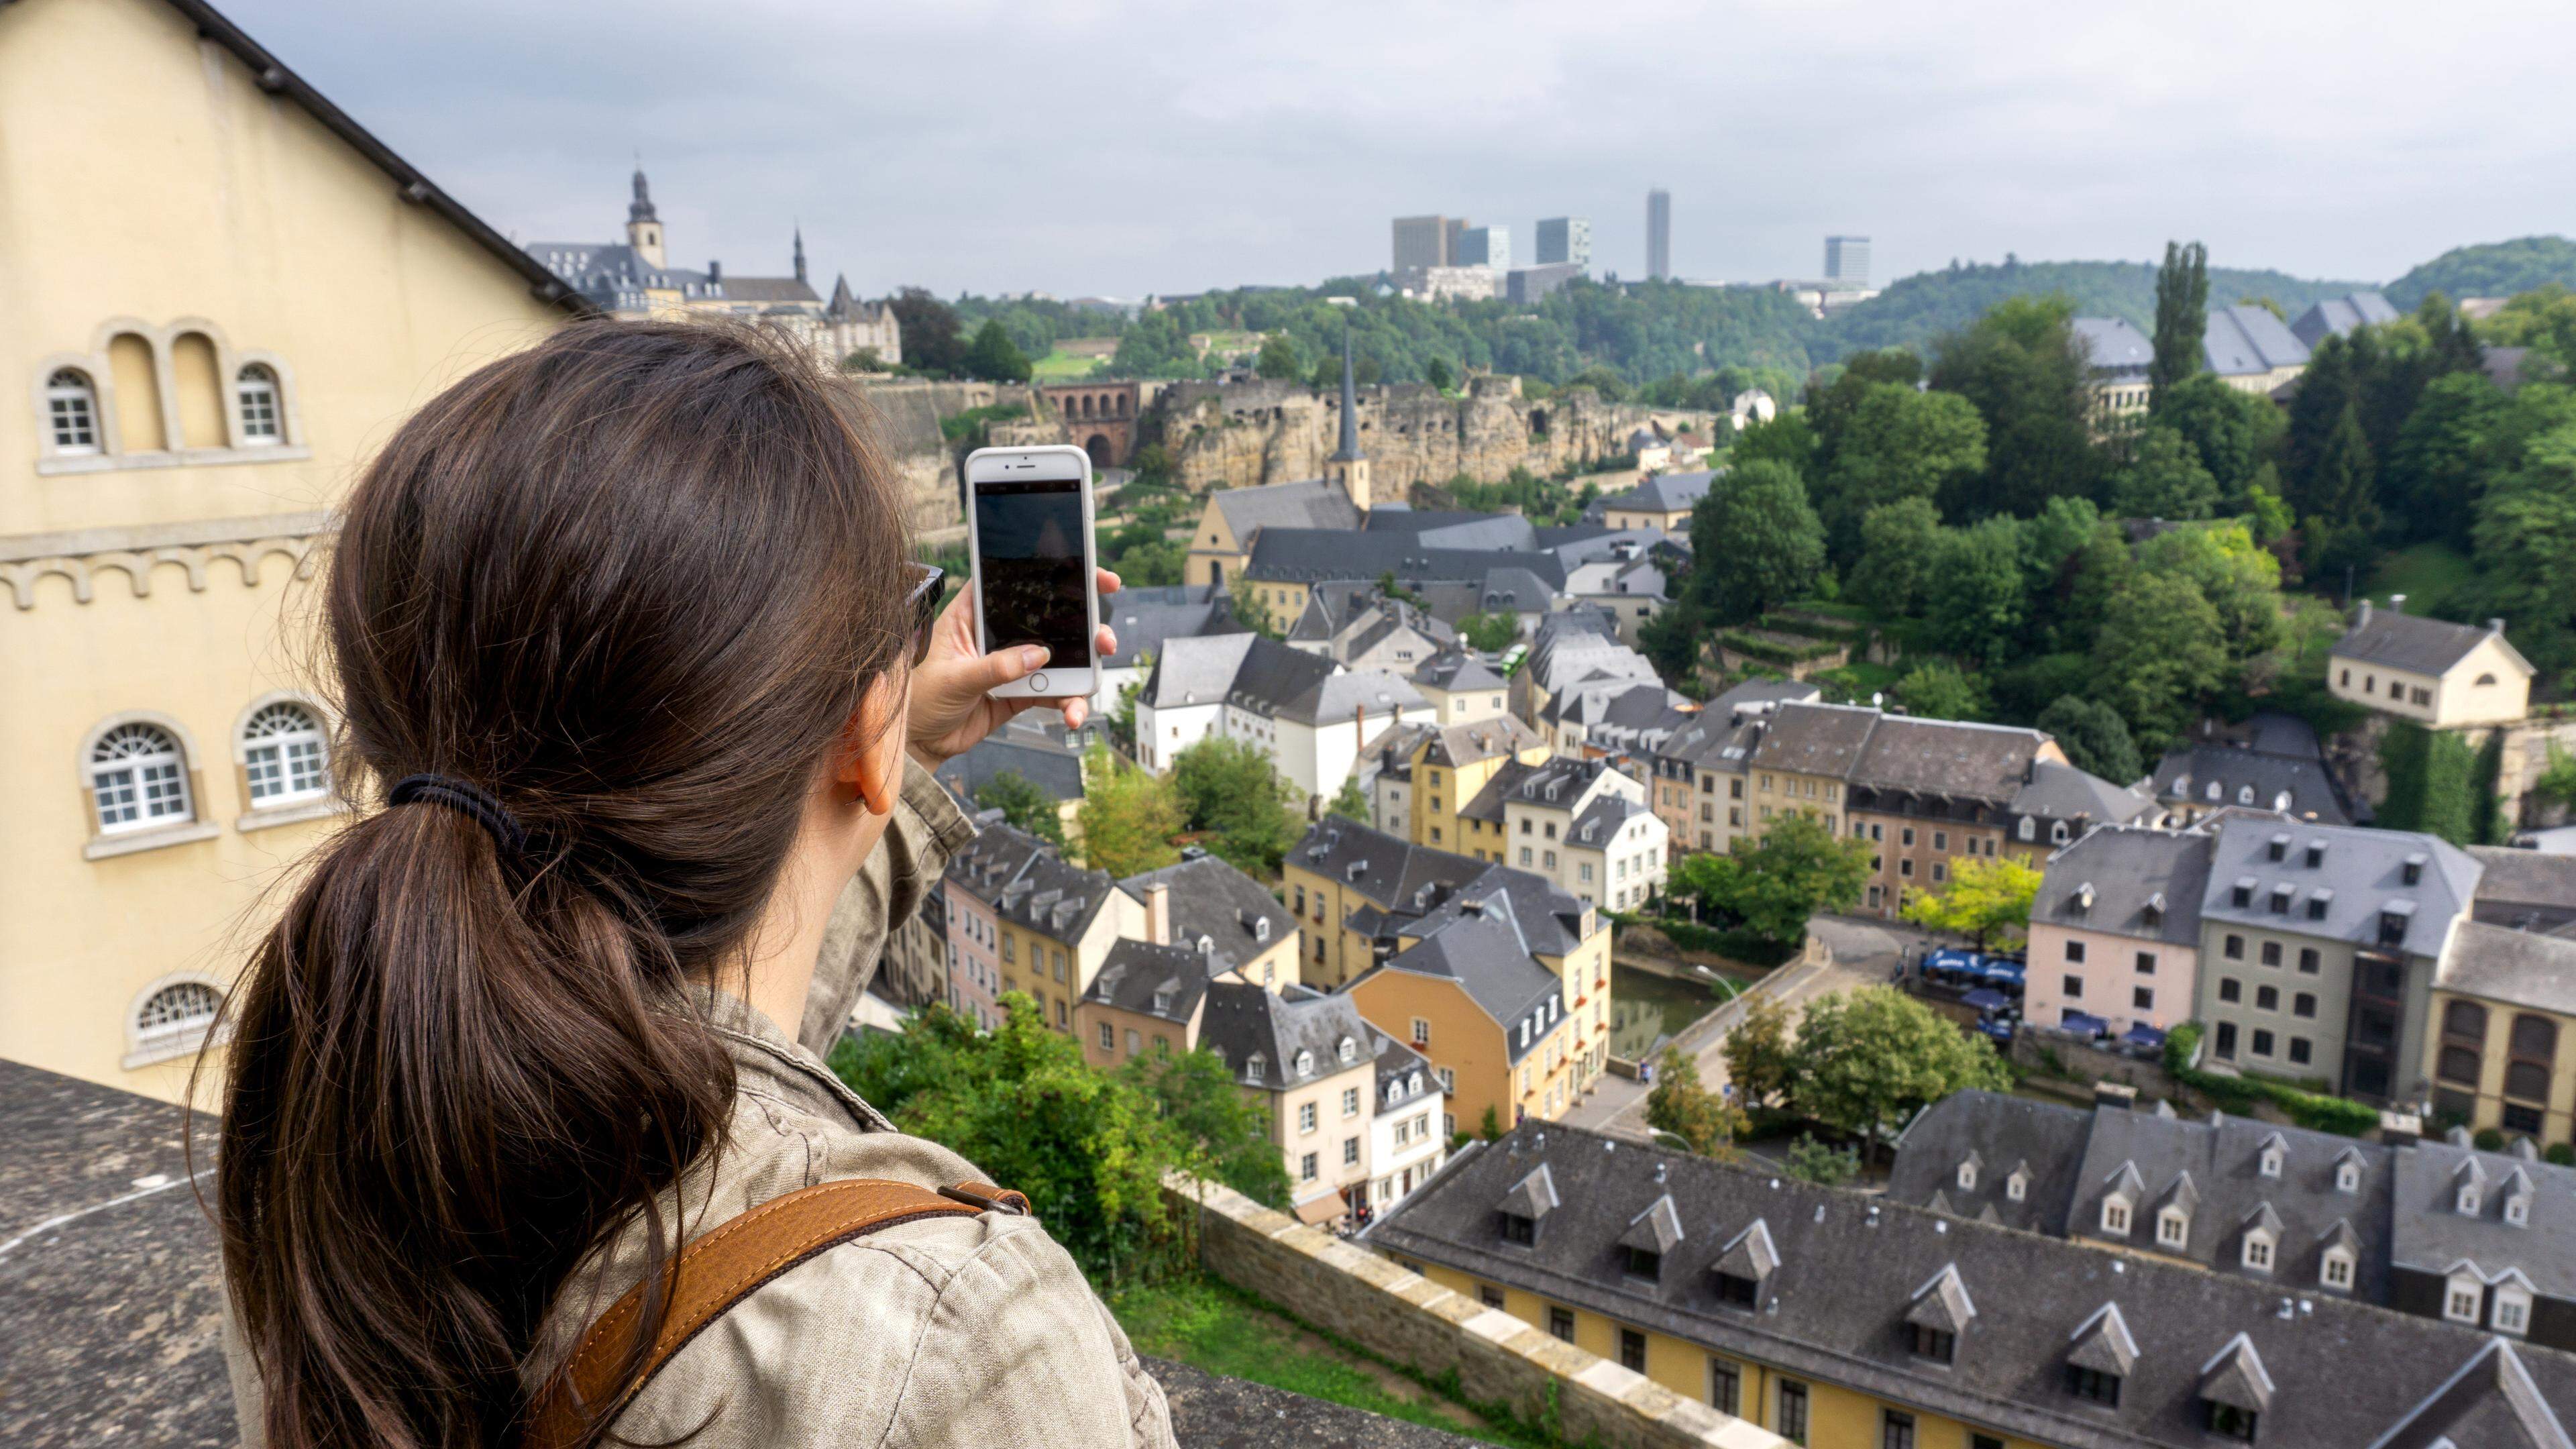 Luxembourg-Ville regorge d’endroits parfaits pour capturer ses meilleurs clichés.